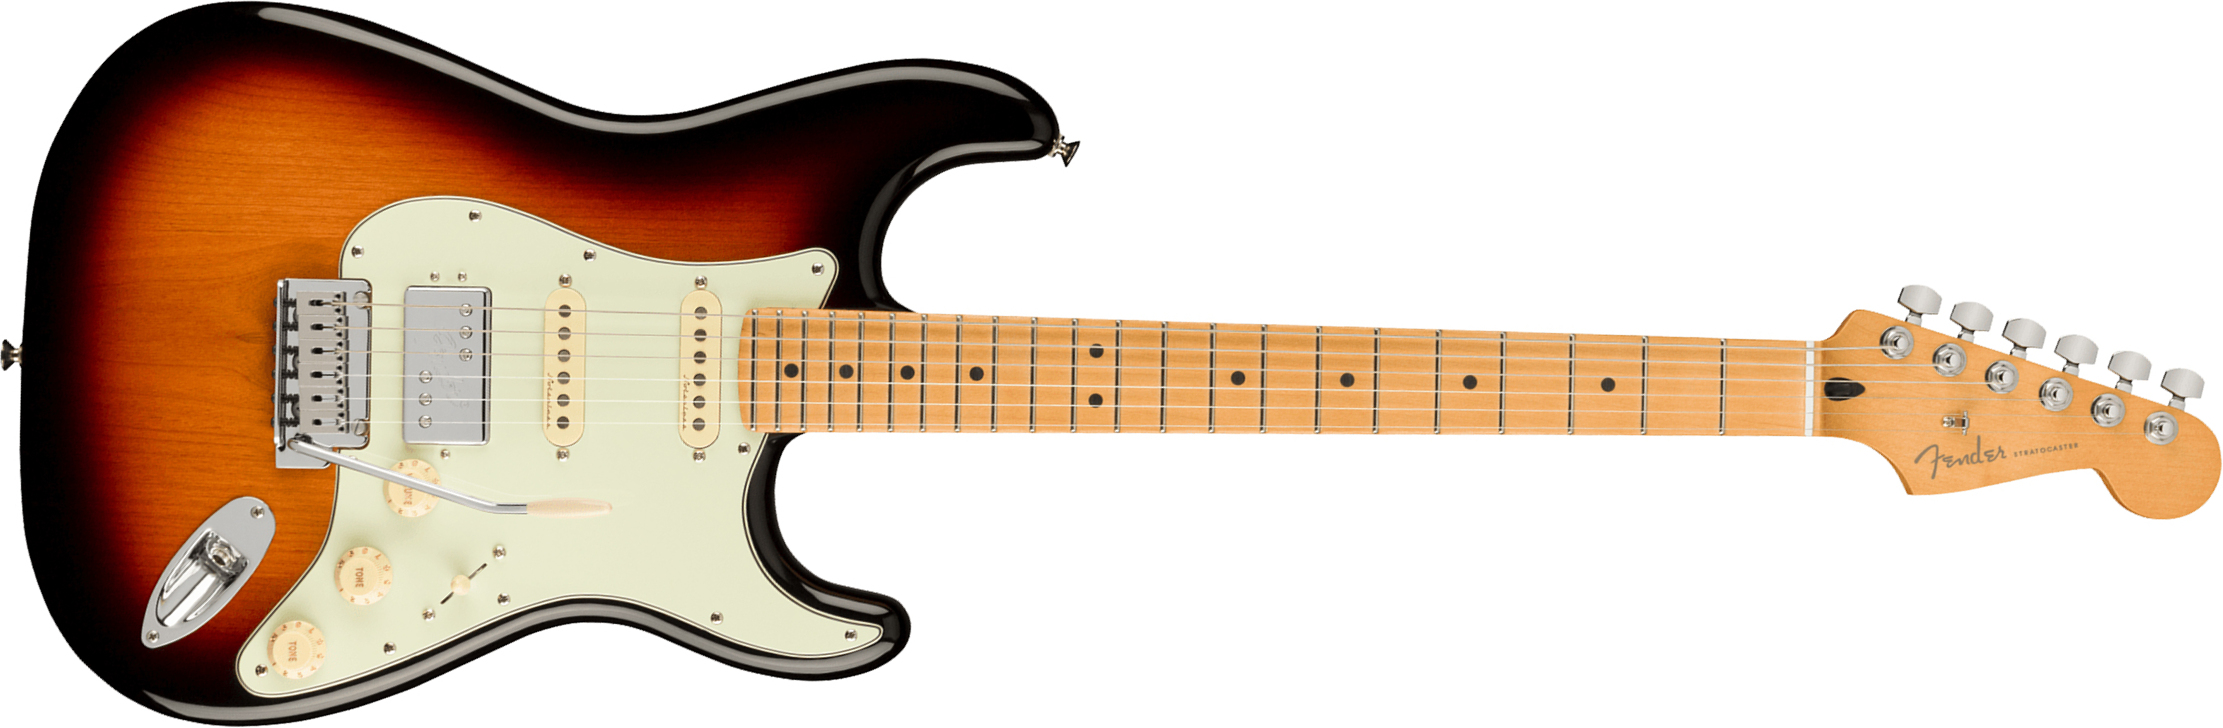 Fender Strat Player Plus Mex Hss Trem Mn - 3-color Sunburst - Elektrische gitaar in Str-vorm - Main picture